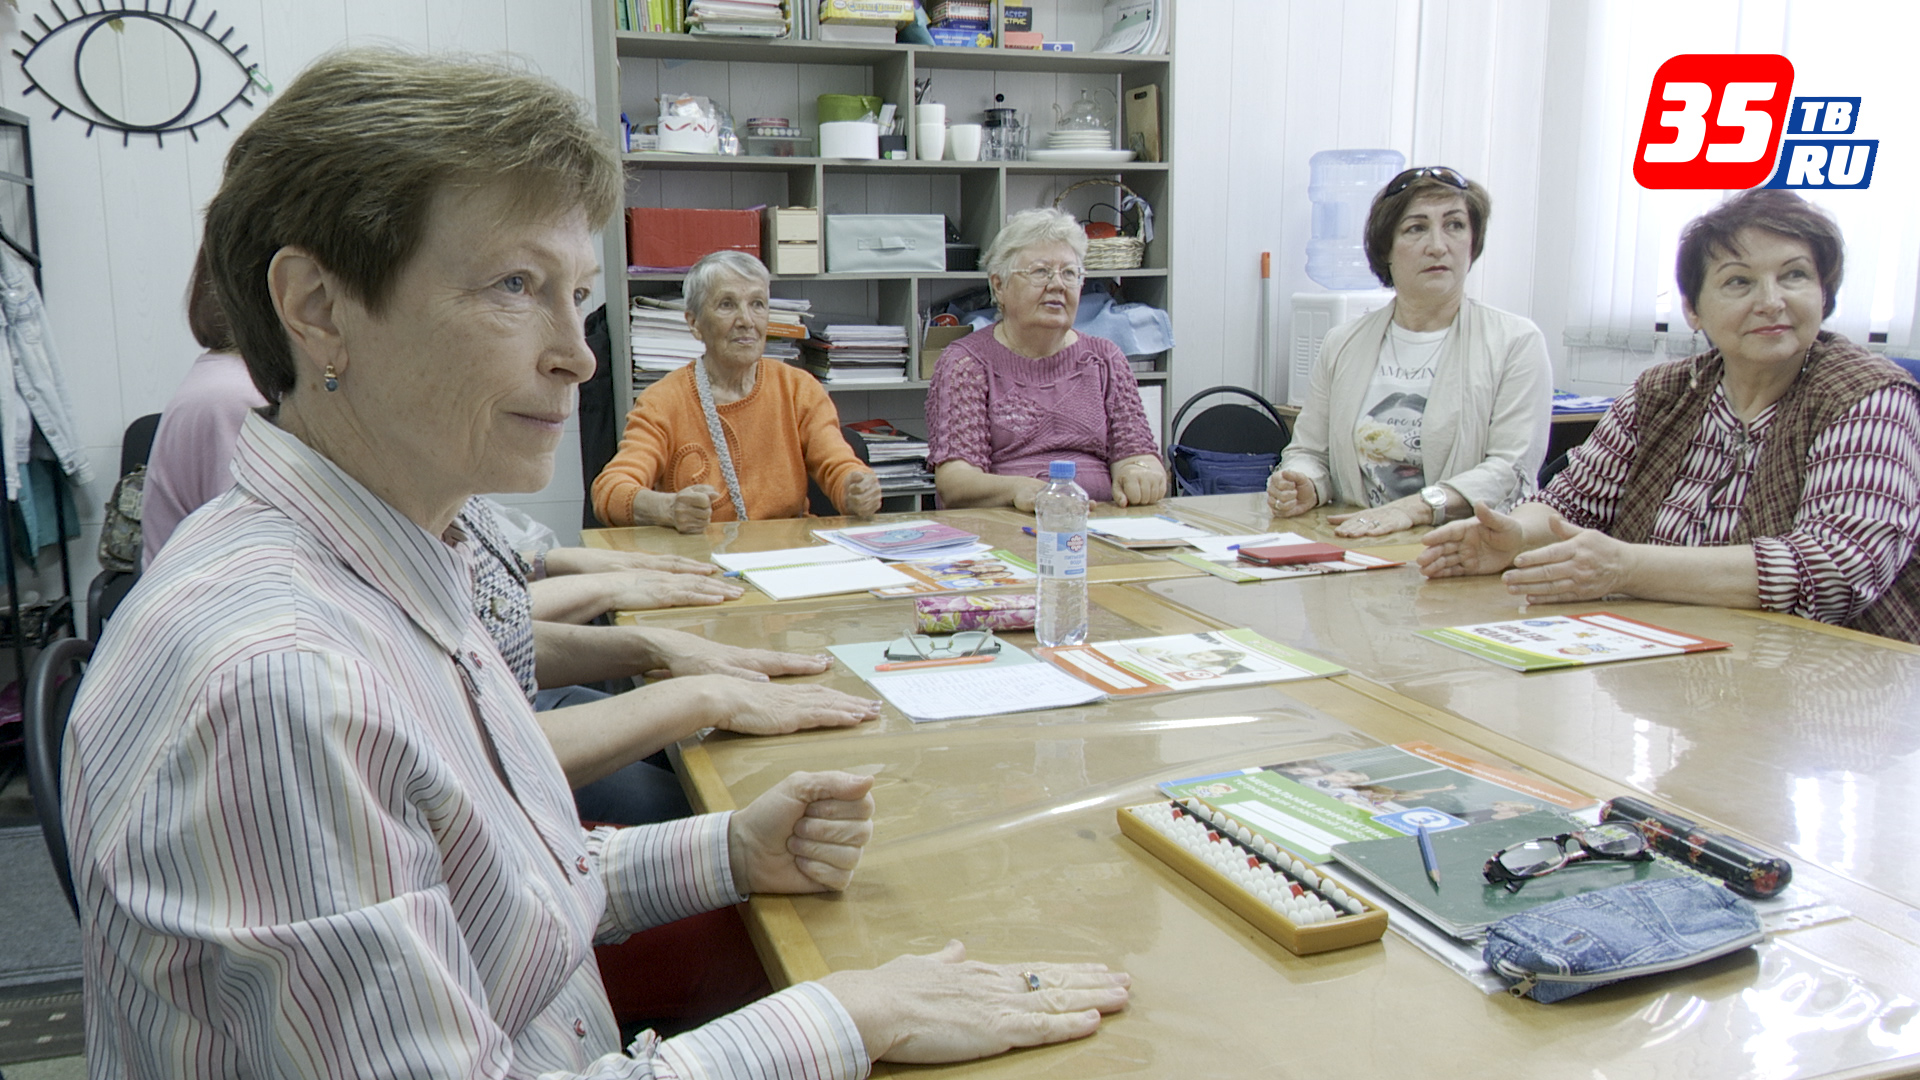 Череповецкий проект активного долголетия «Радость жизни» признан одним из лучших в России